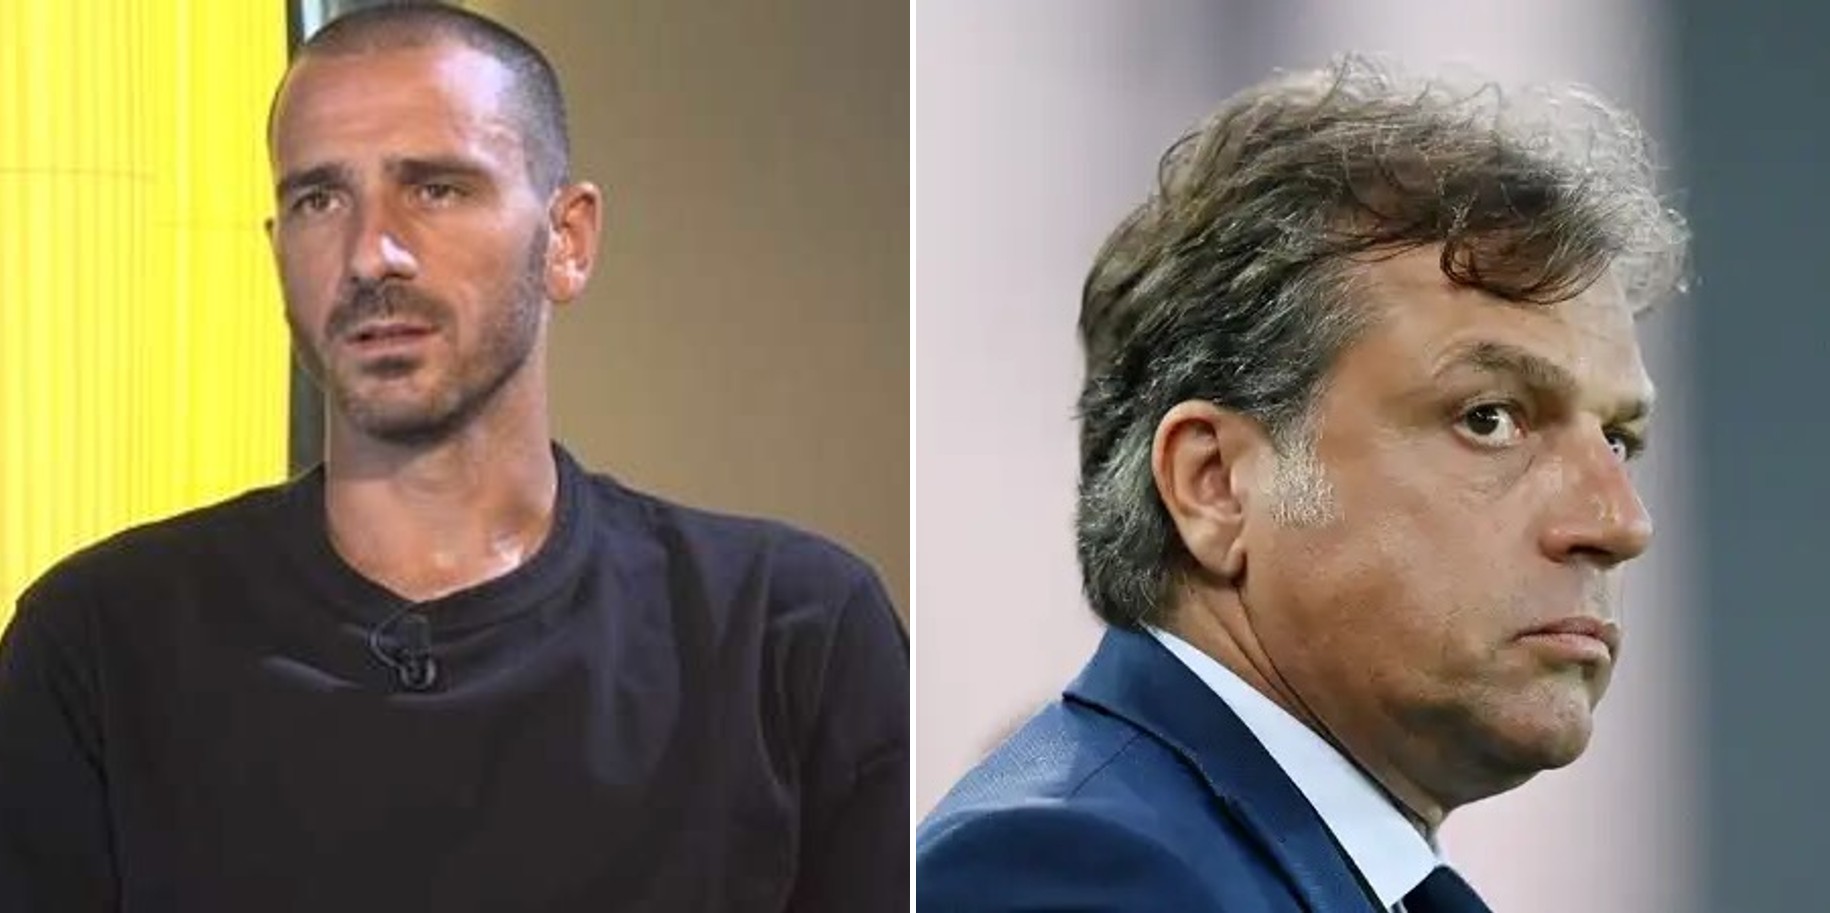 L'ex difensore della Juventus Football Club Leonardo Bonucci attacca il direttore sportivo Cristiano Giuntoli: "Sono stato umiliato in casa mia"